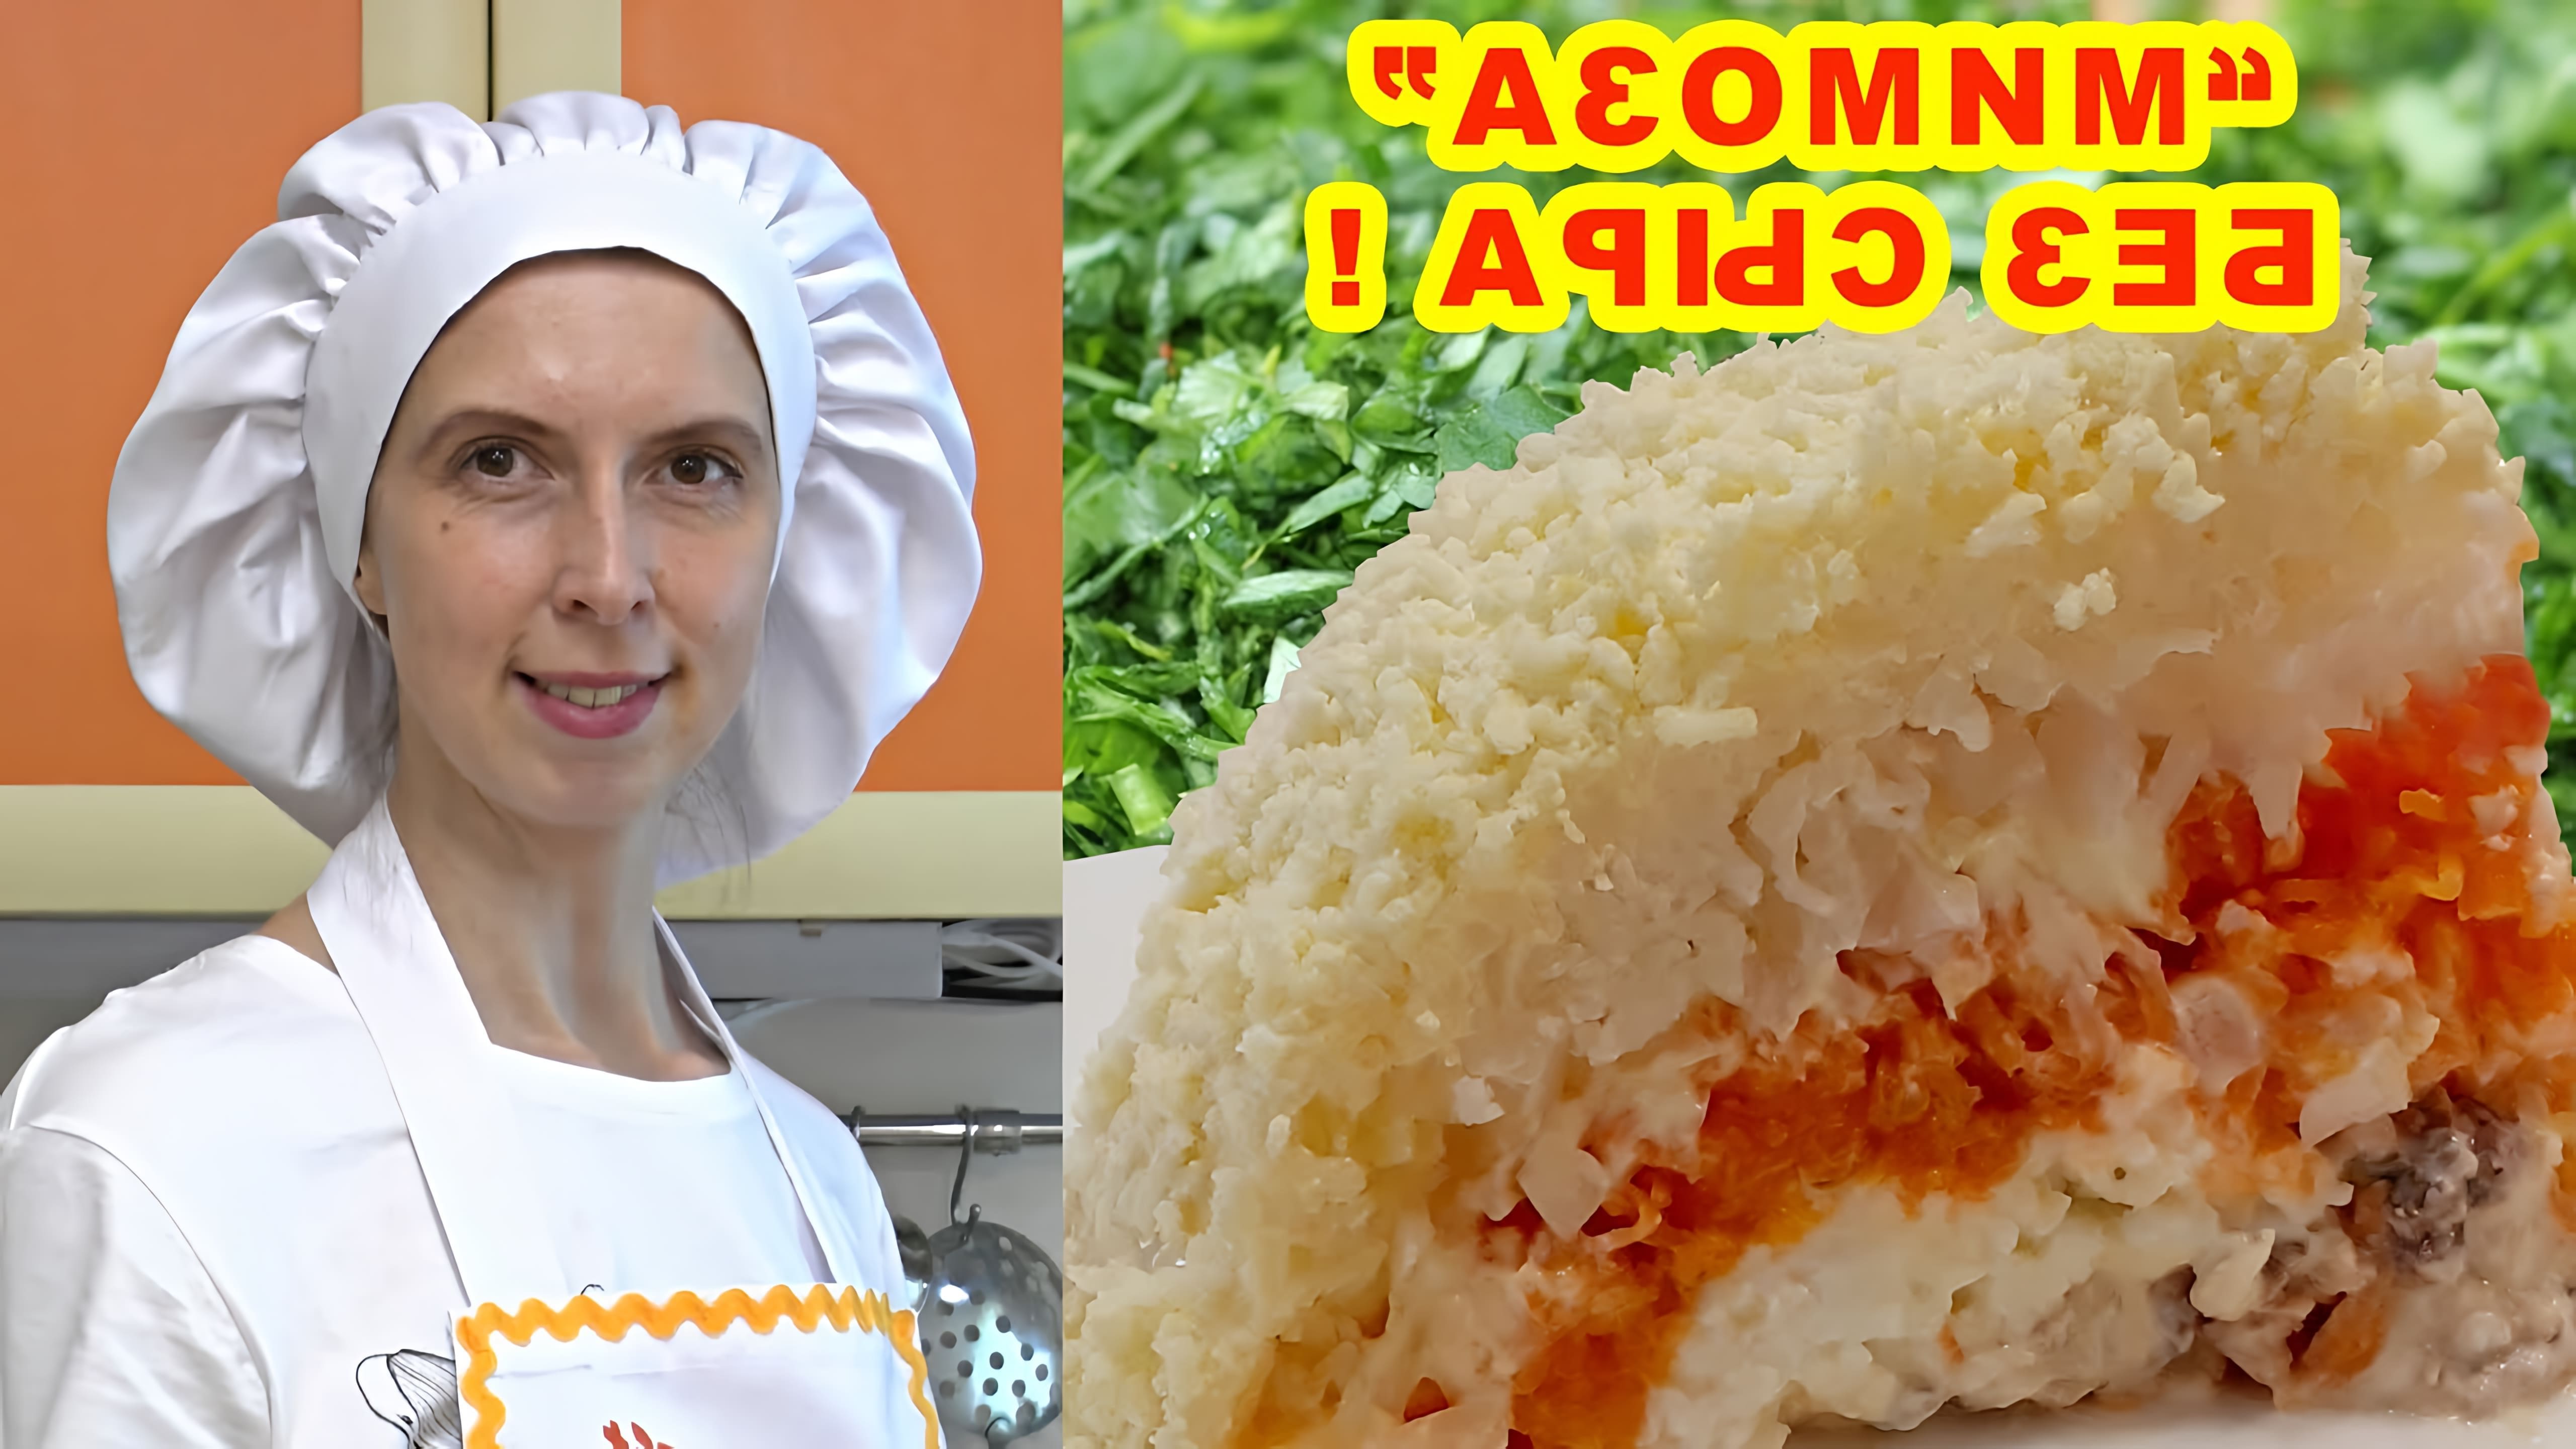 В этом видео демонстрируется рецепт приготовления салата "Мимоза" без сыра